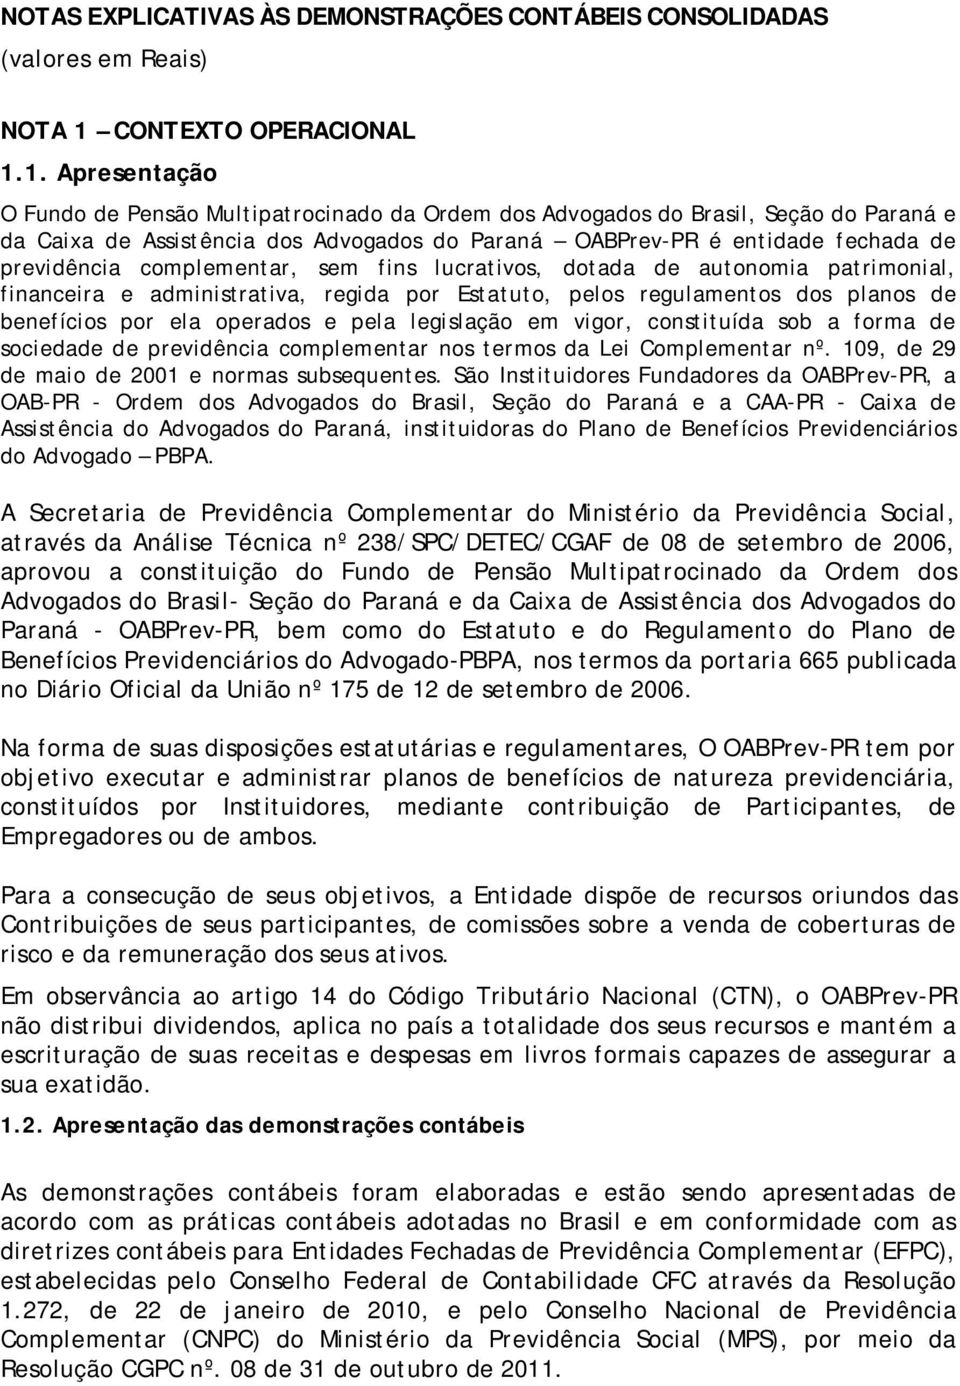 1. Apresentação O Fundo de Pensão Multipatrocinado da Ordem dos Advogados do Brasil, Seção do Paraná e da Caixa de Assistência dos Advogados do Paraná OABPrev-PR é entidade fechada de previdência